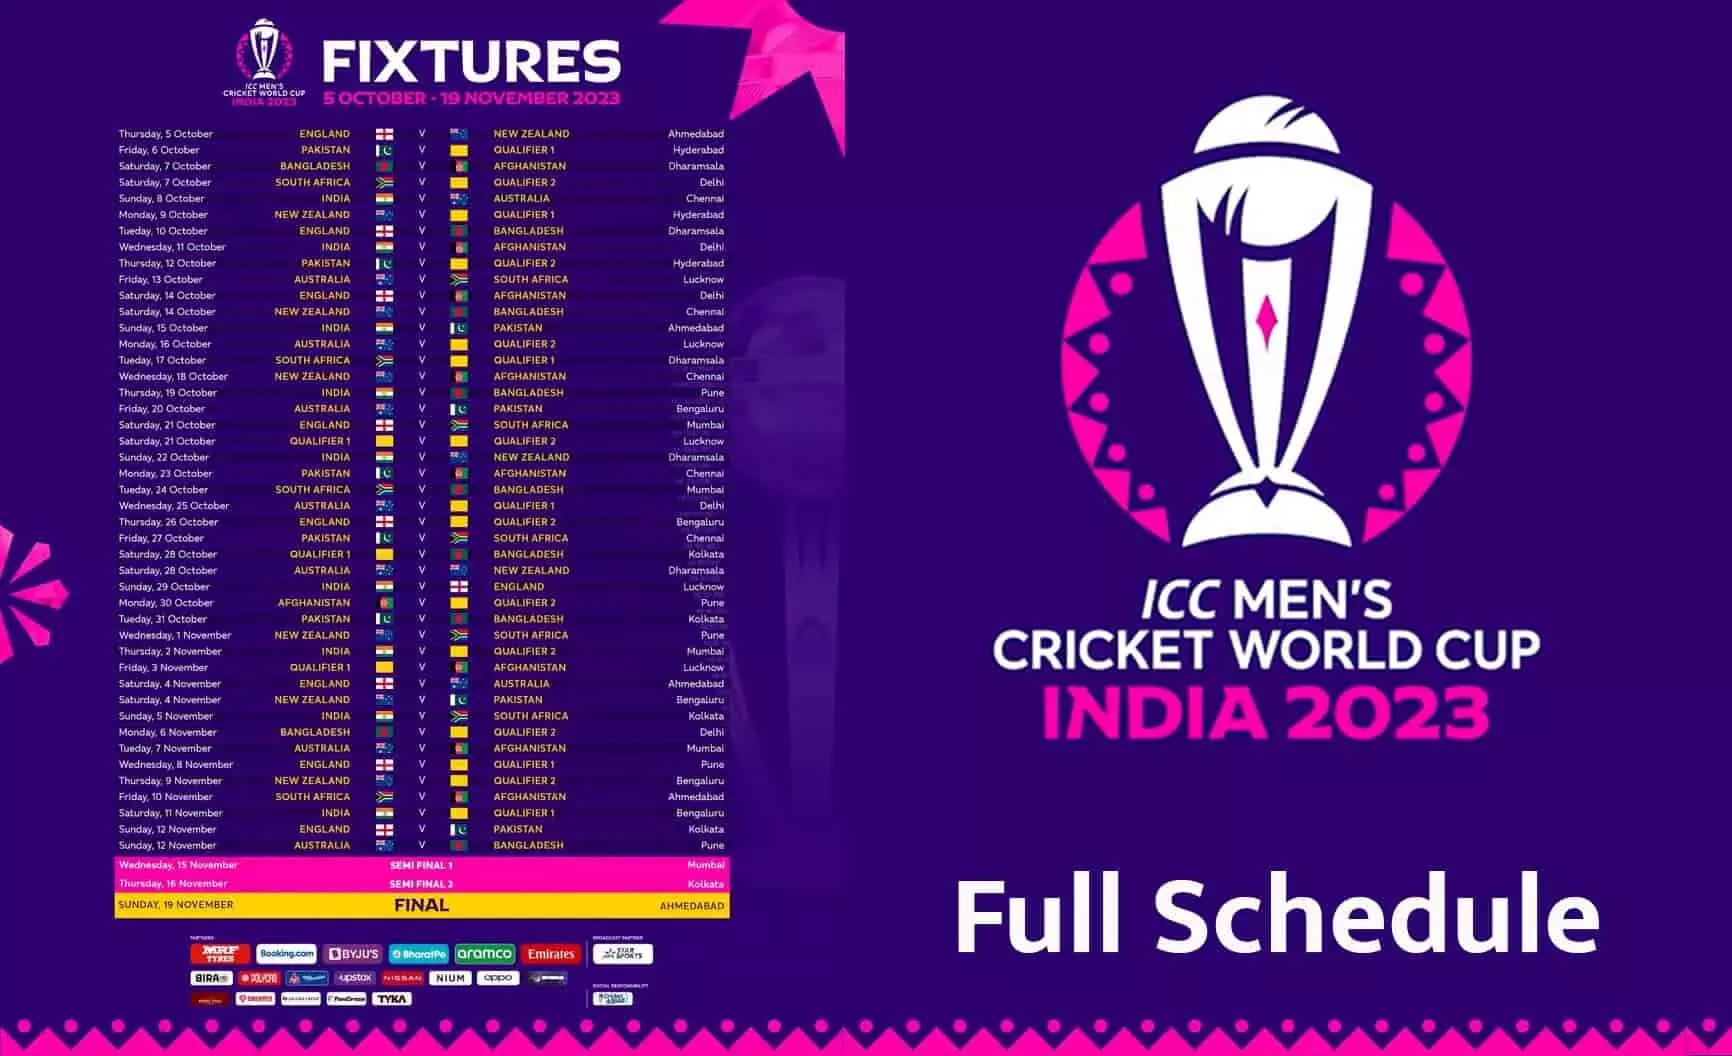 ICC ODI World Cup 2023 Schedule